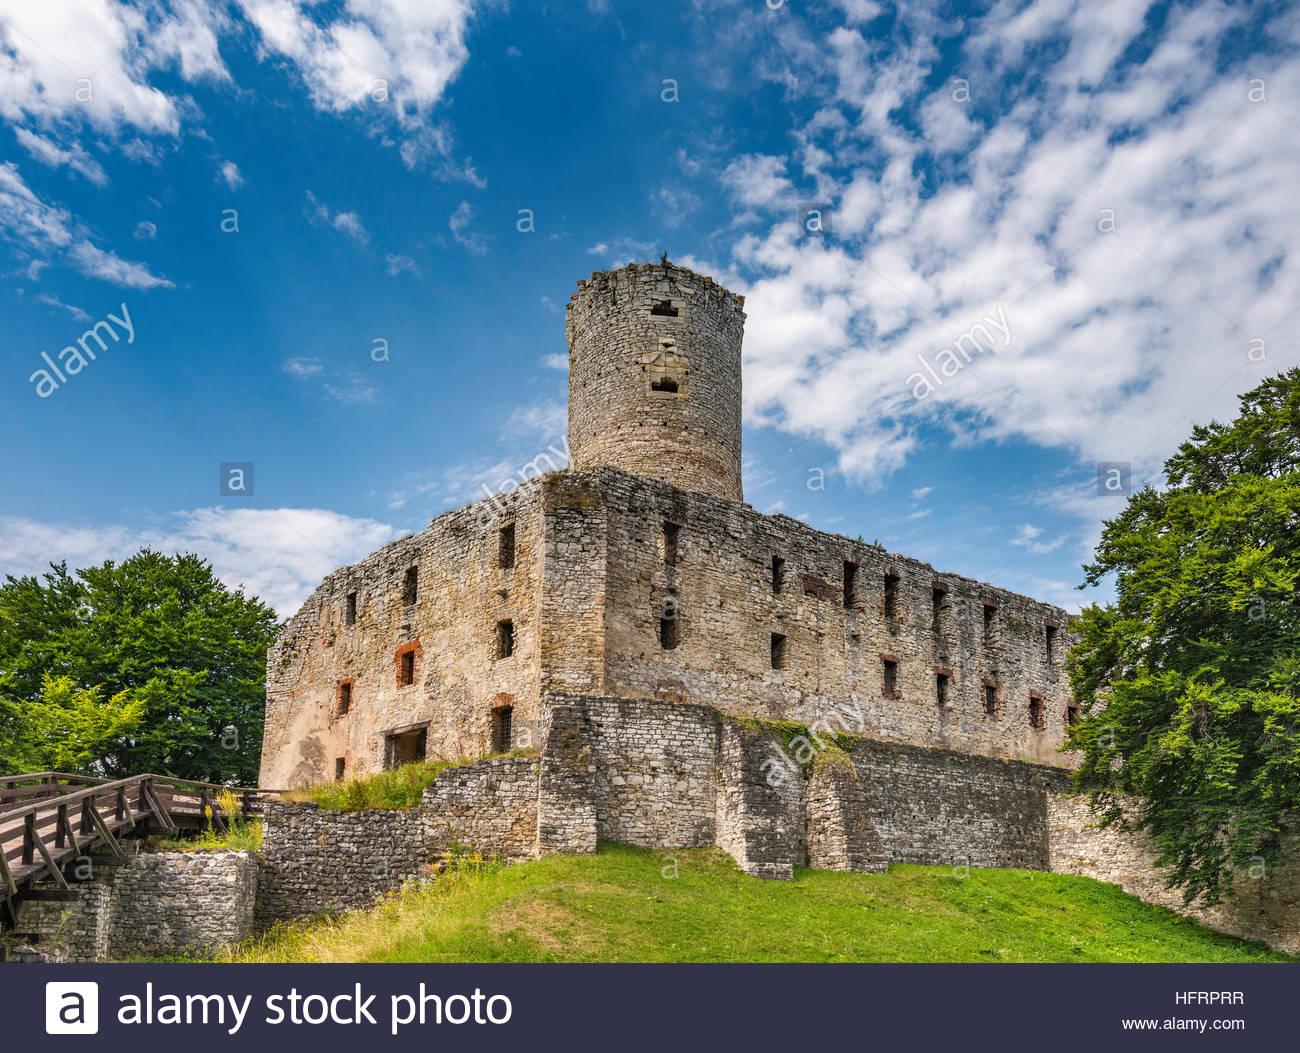 Images of Lipowiec Castle | 1300x1053